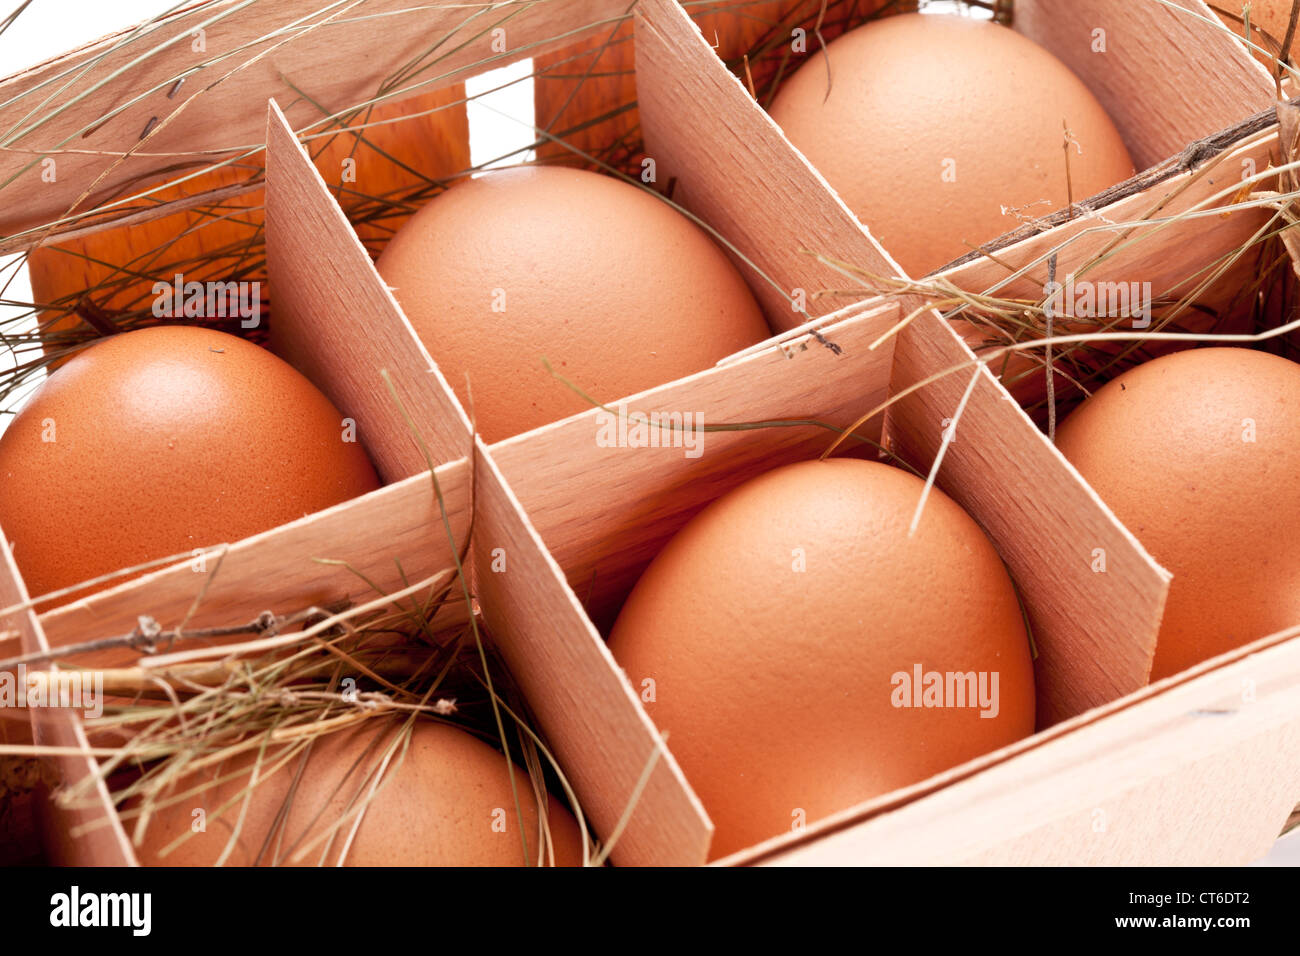 Eiern mit einem Strohhalm in einem hölzernen Korb Stockfoto